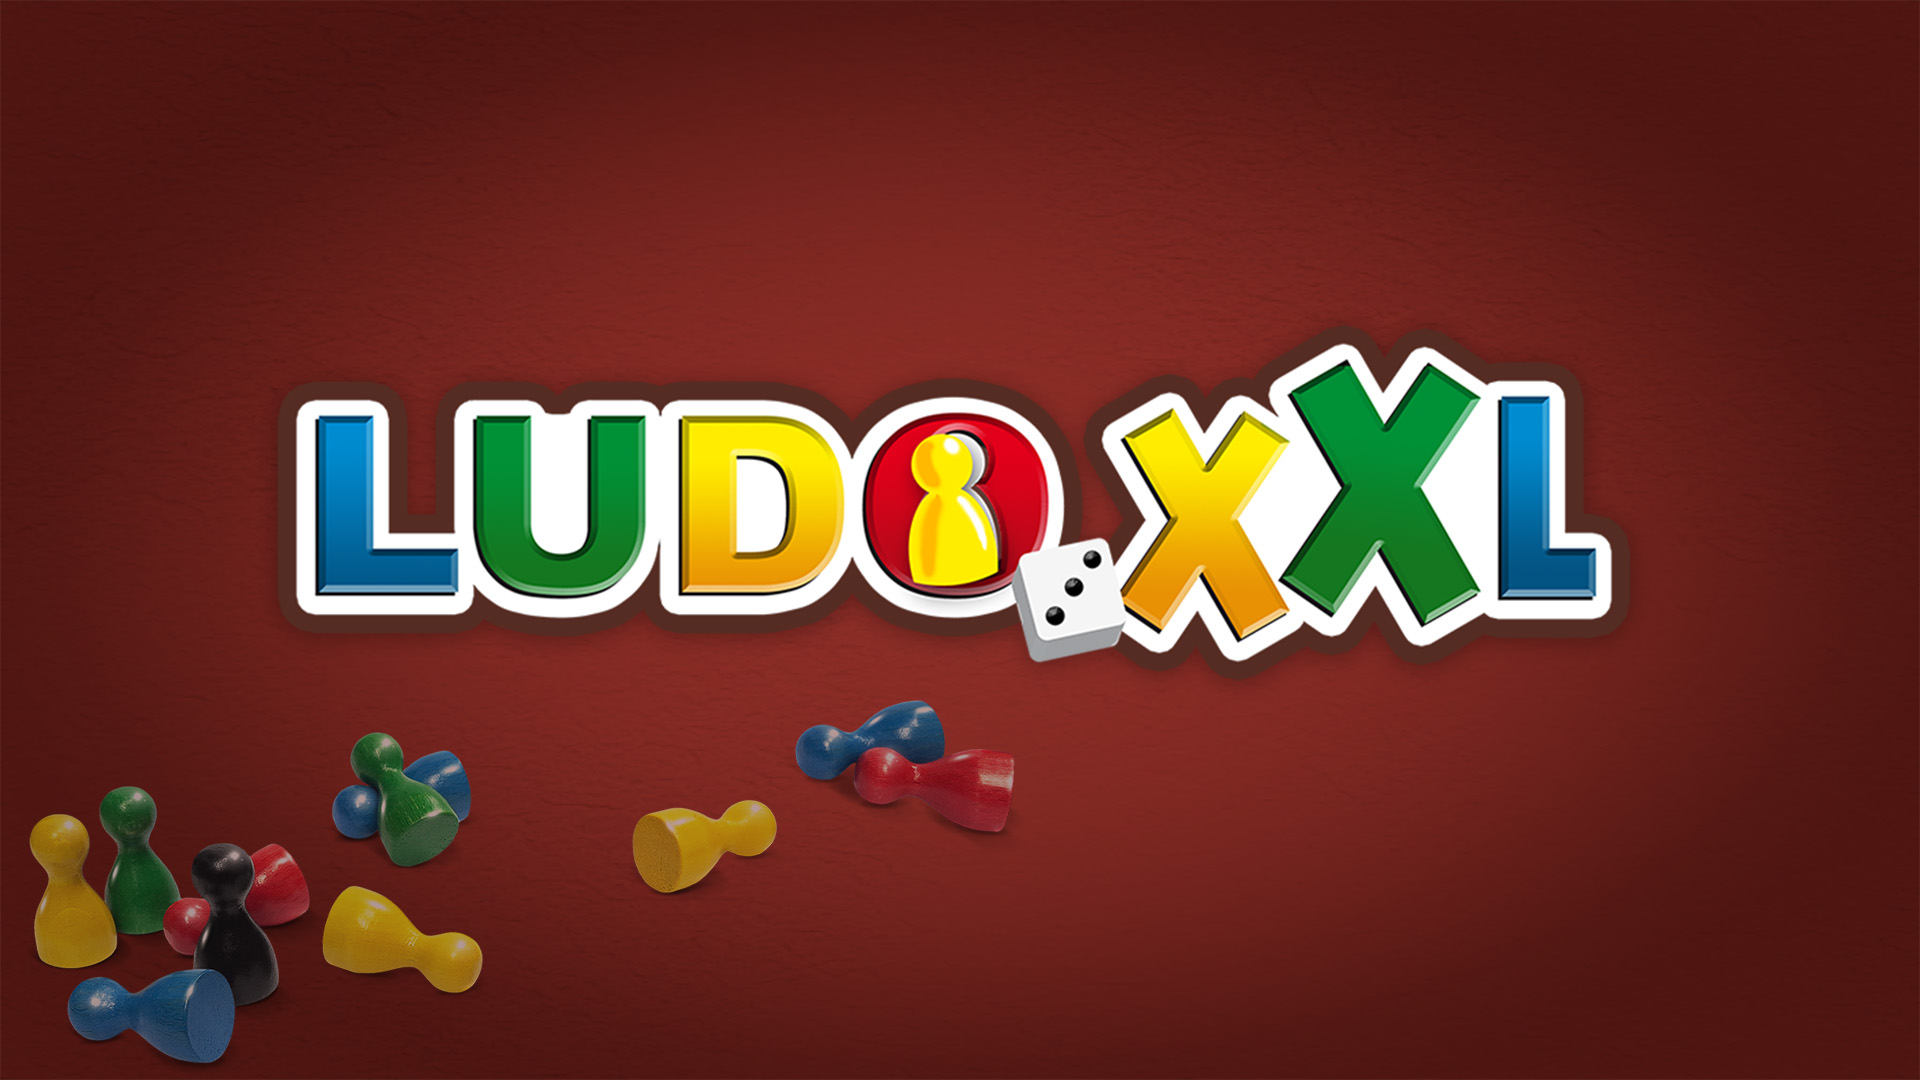 Ludo XXL for Nintendo Switch - Nintendo Official Site